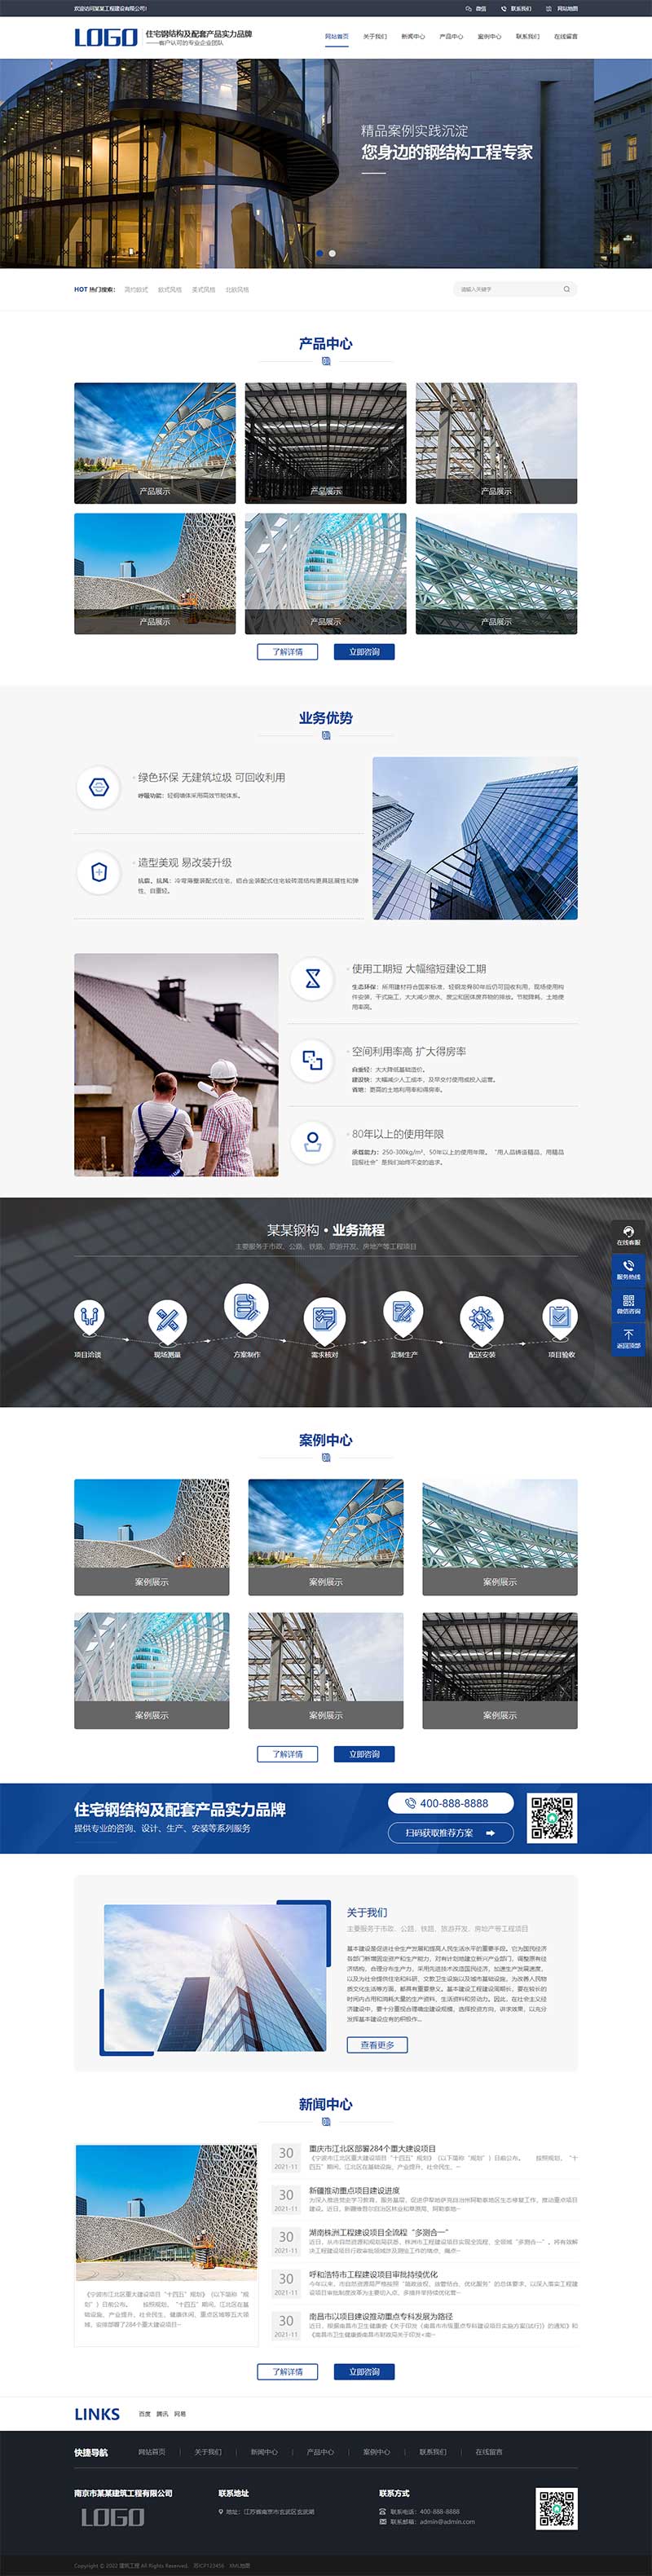 蓝色钢结构机械五金工程建筑基建网站WordPress模板演示图